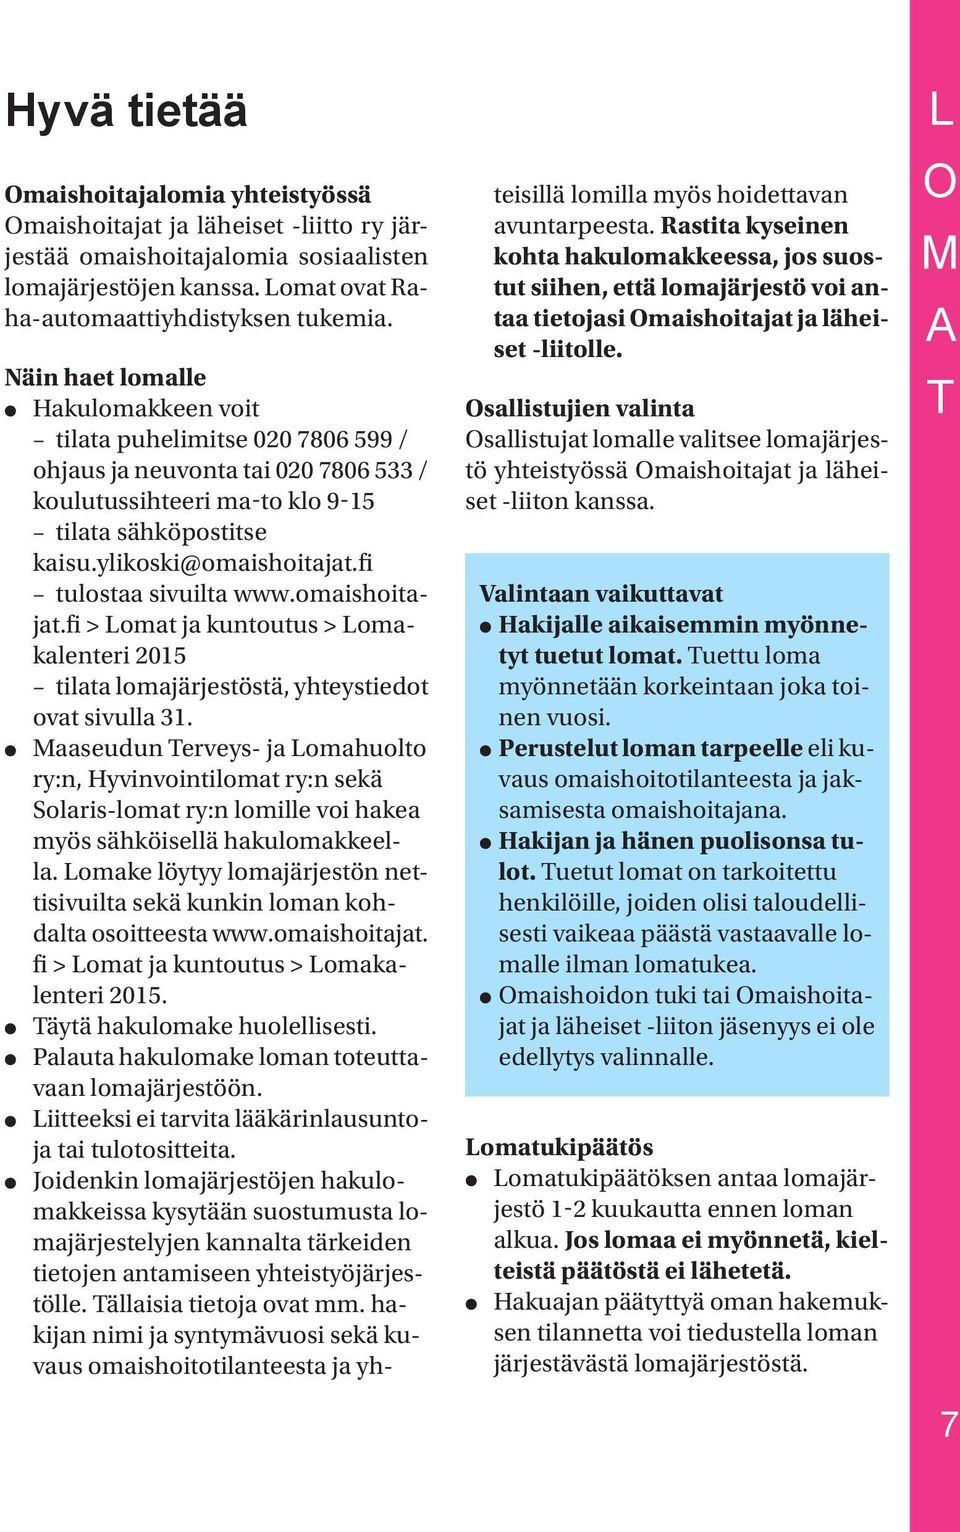 fi tulostaa sivuilta www.omaishoitajat.fi > Lomat ja kuntoutus > Lomakalenteri 2015 tilata lomajärjestöstä, yhteystiedot ovat sivulla 31.